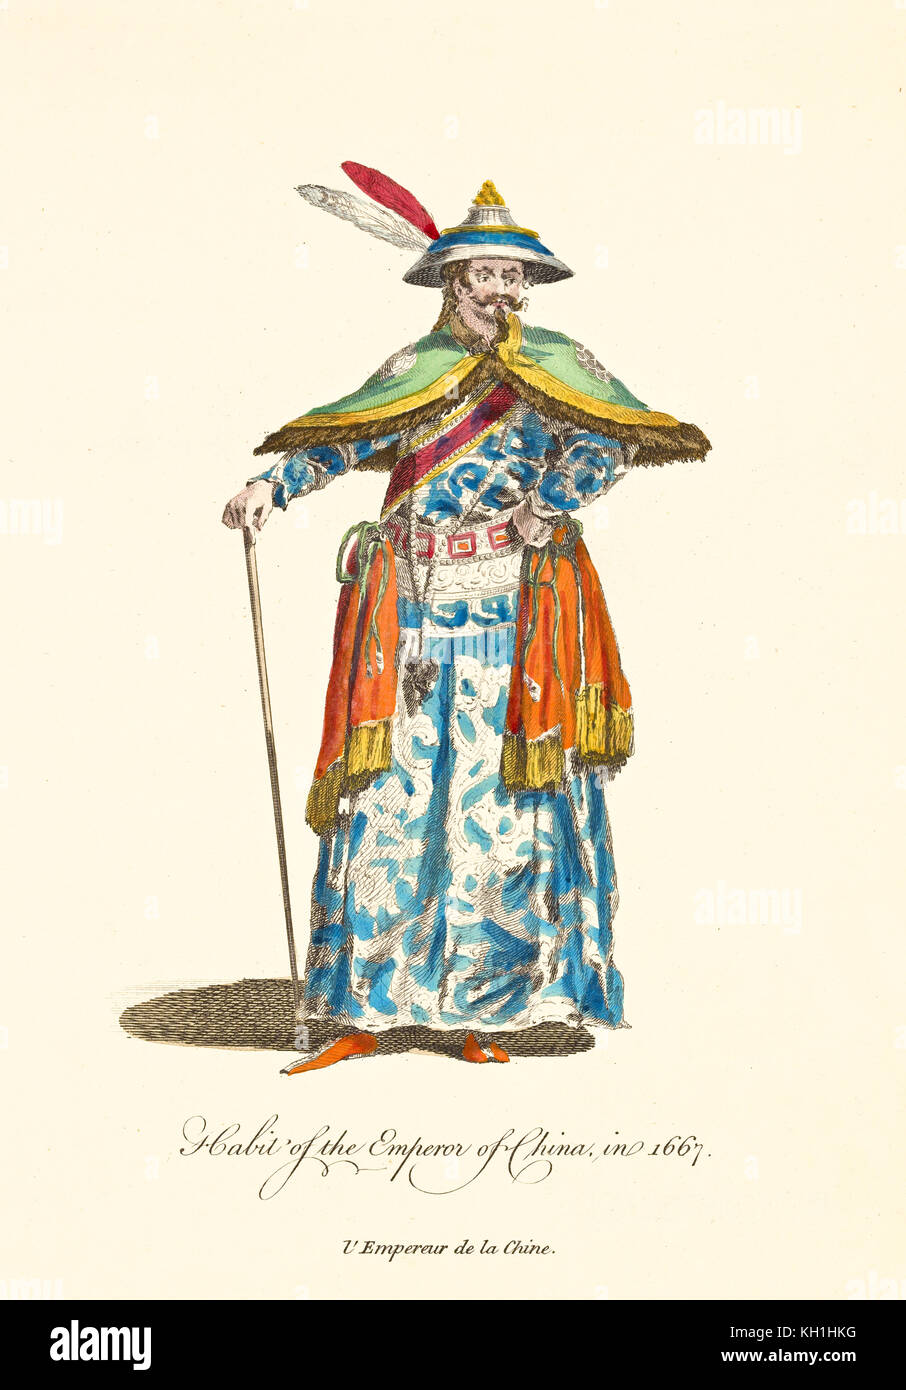 Antica illustrazione dell'Imperatore della Cina in abiti tradizionali nel 1667. Lunga tunica bianca e blu con elementi arancioni drappeggi, cappello a cono e piume. Foto Stock